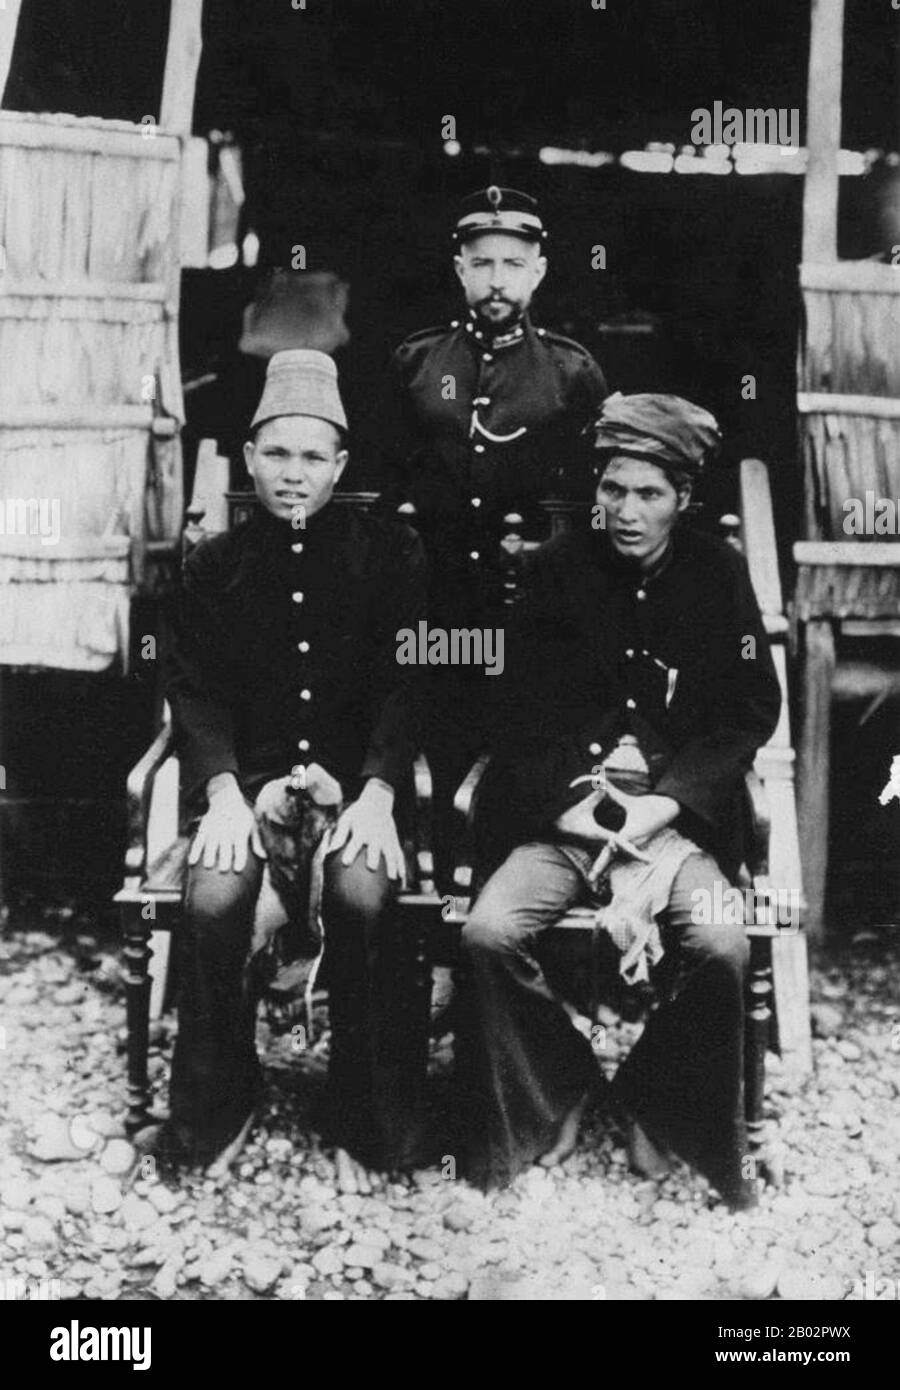 Der Aceh-Krieg, auch als holländischer Krieg oder Infidelkrieg (zwischen den Jahren zwischen den Jahren zwischen den Jahren zwischen den Jahren zwischen dem Sultanat Aceh und den Niederlanden bekannt, wurde Anfang des Jahres 1873 durch Gespräche zwischen Vertretern von Aceh und Großbritannien in Singapur ausgelöst. Der Krieg war Teil einer Reihe von Konflikten im späten 19. Jahrhundert, die die niederländische Herrschaft über das moderne Indonesien festigten. Stockfoto